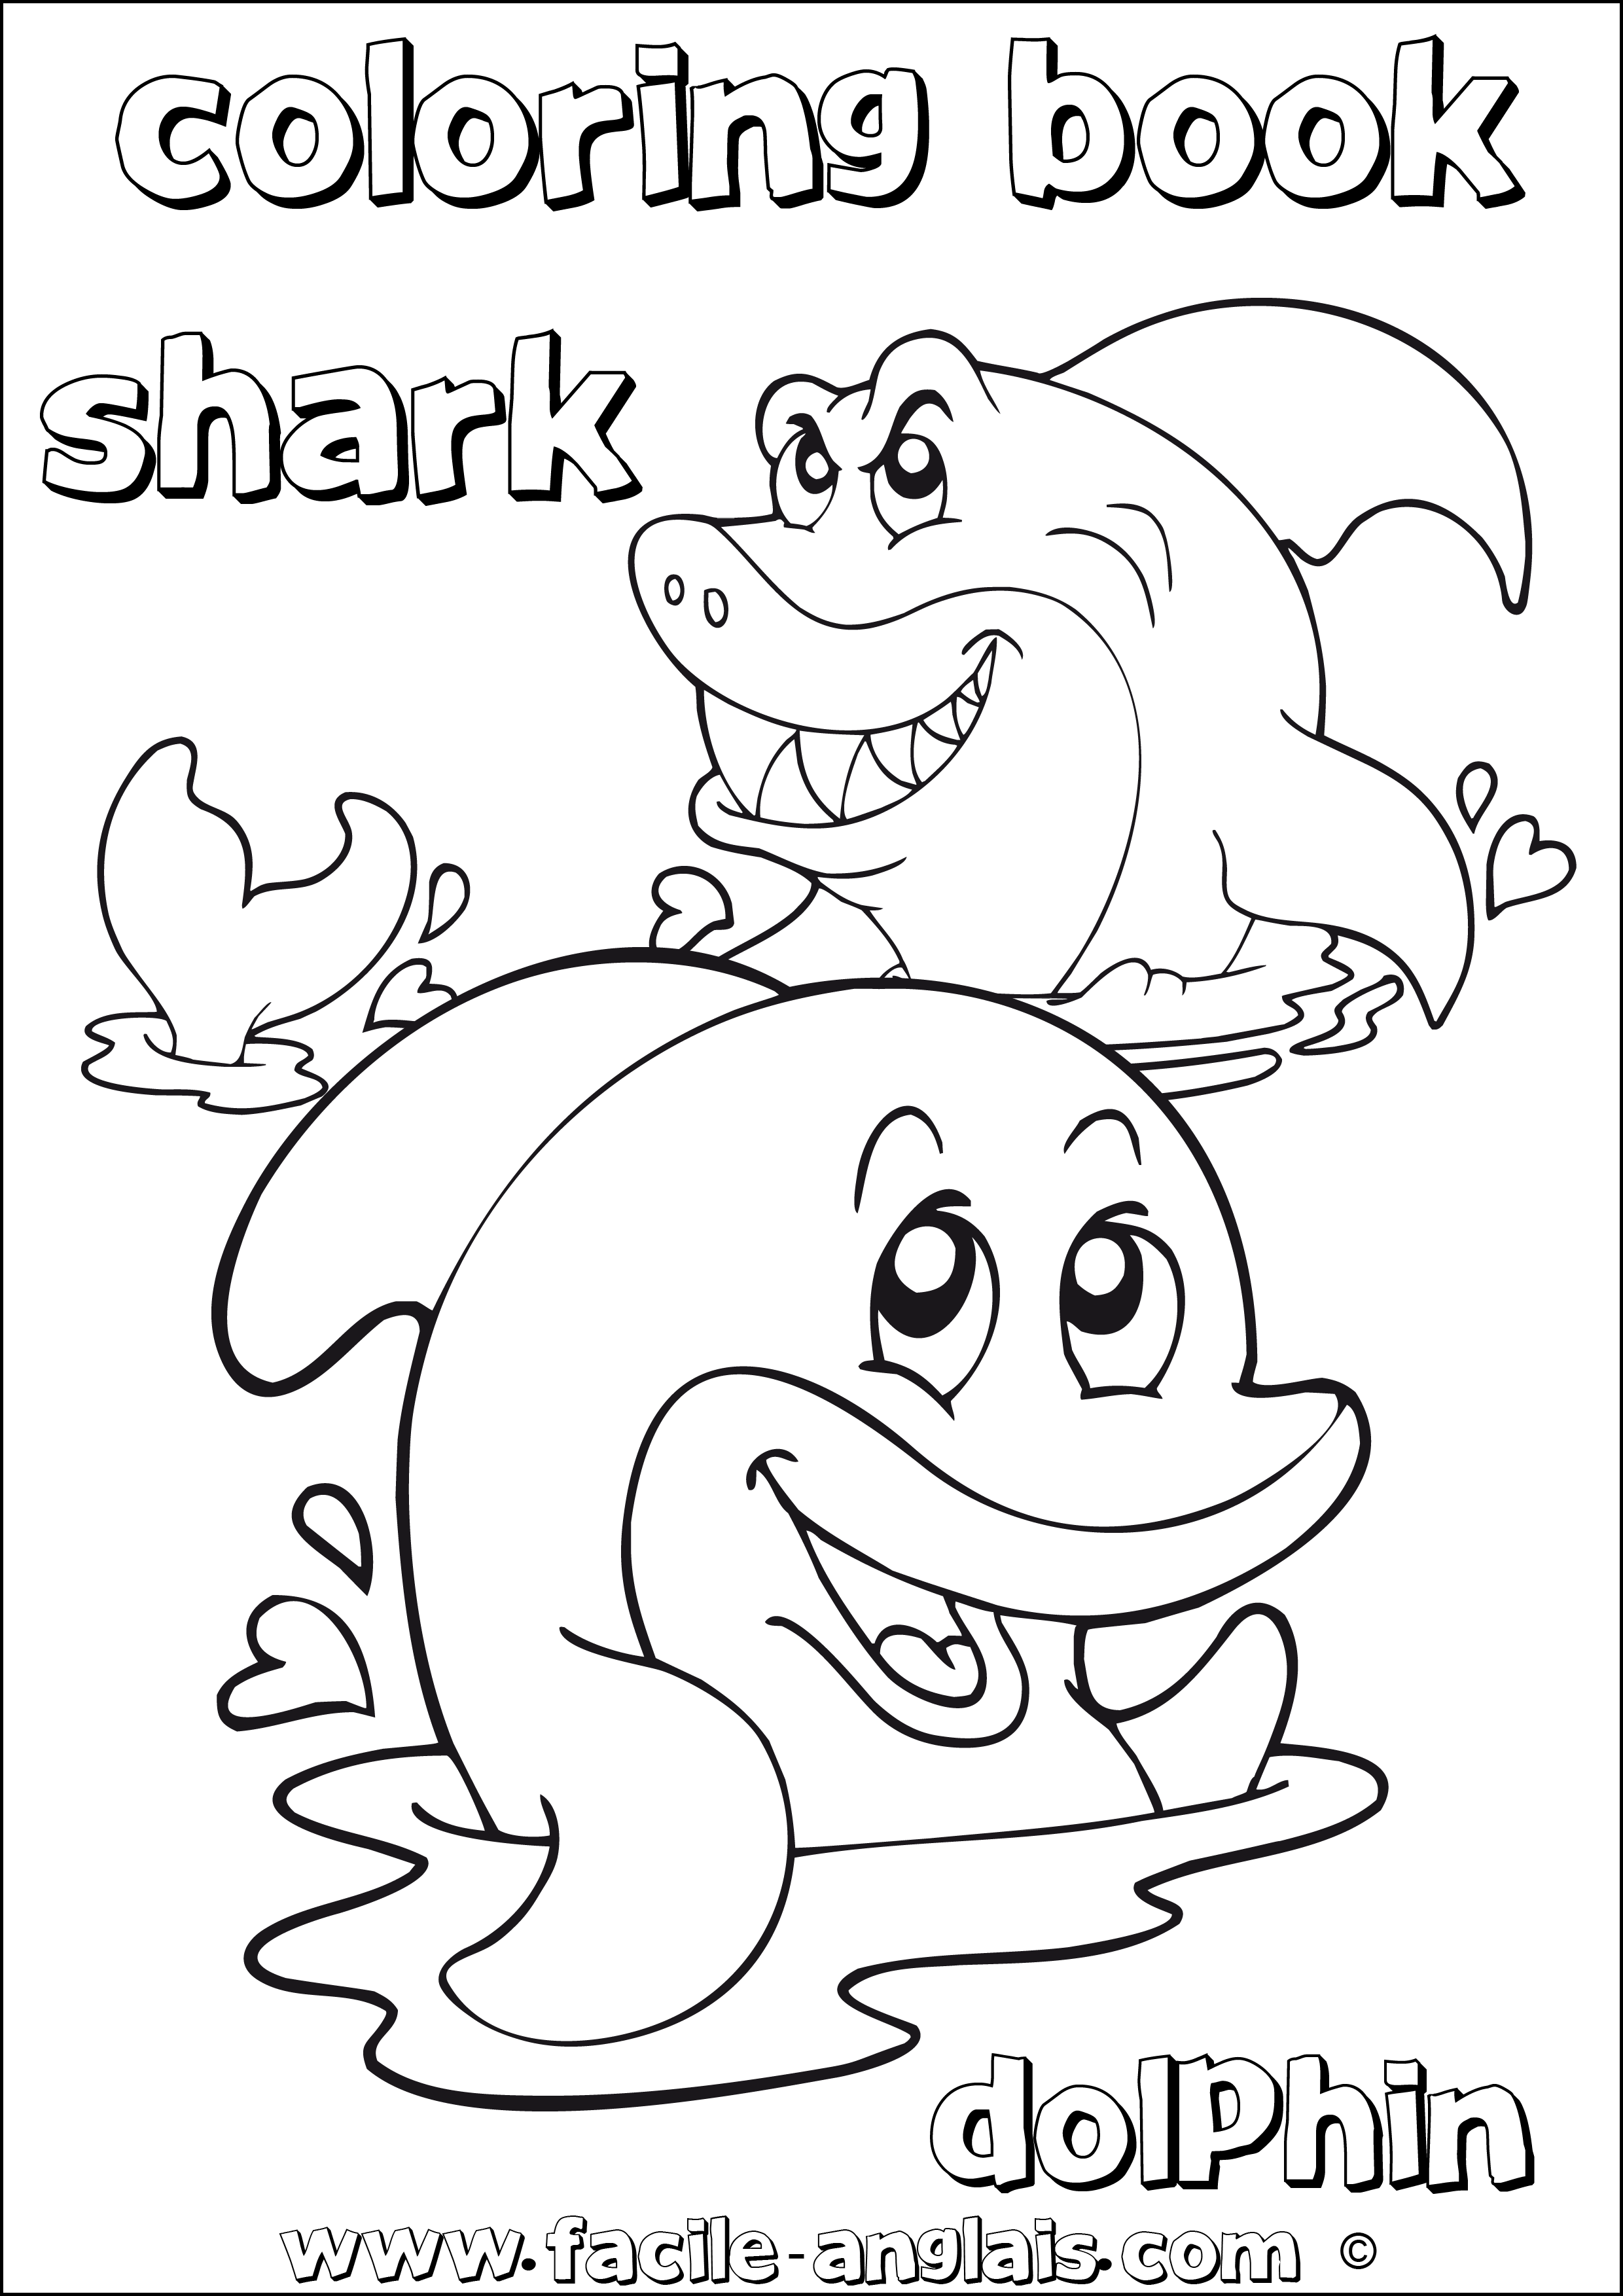 Coloring Dolphin And Shark Coloriage Avec Un Dauphin Et Un Requin Anglais Facile Cours Et Exercices D Anglais Gratuit Et Facile